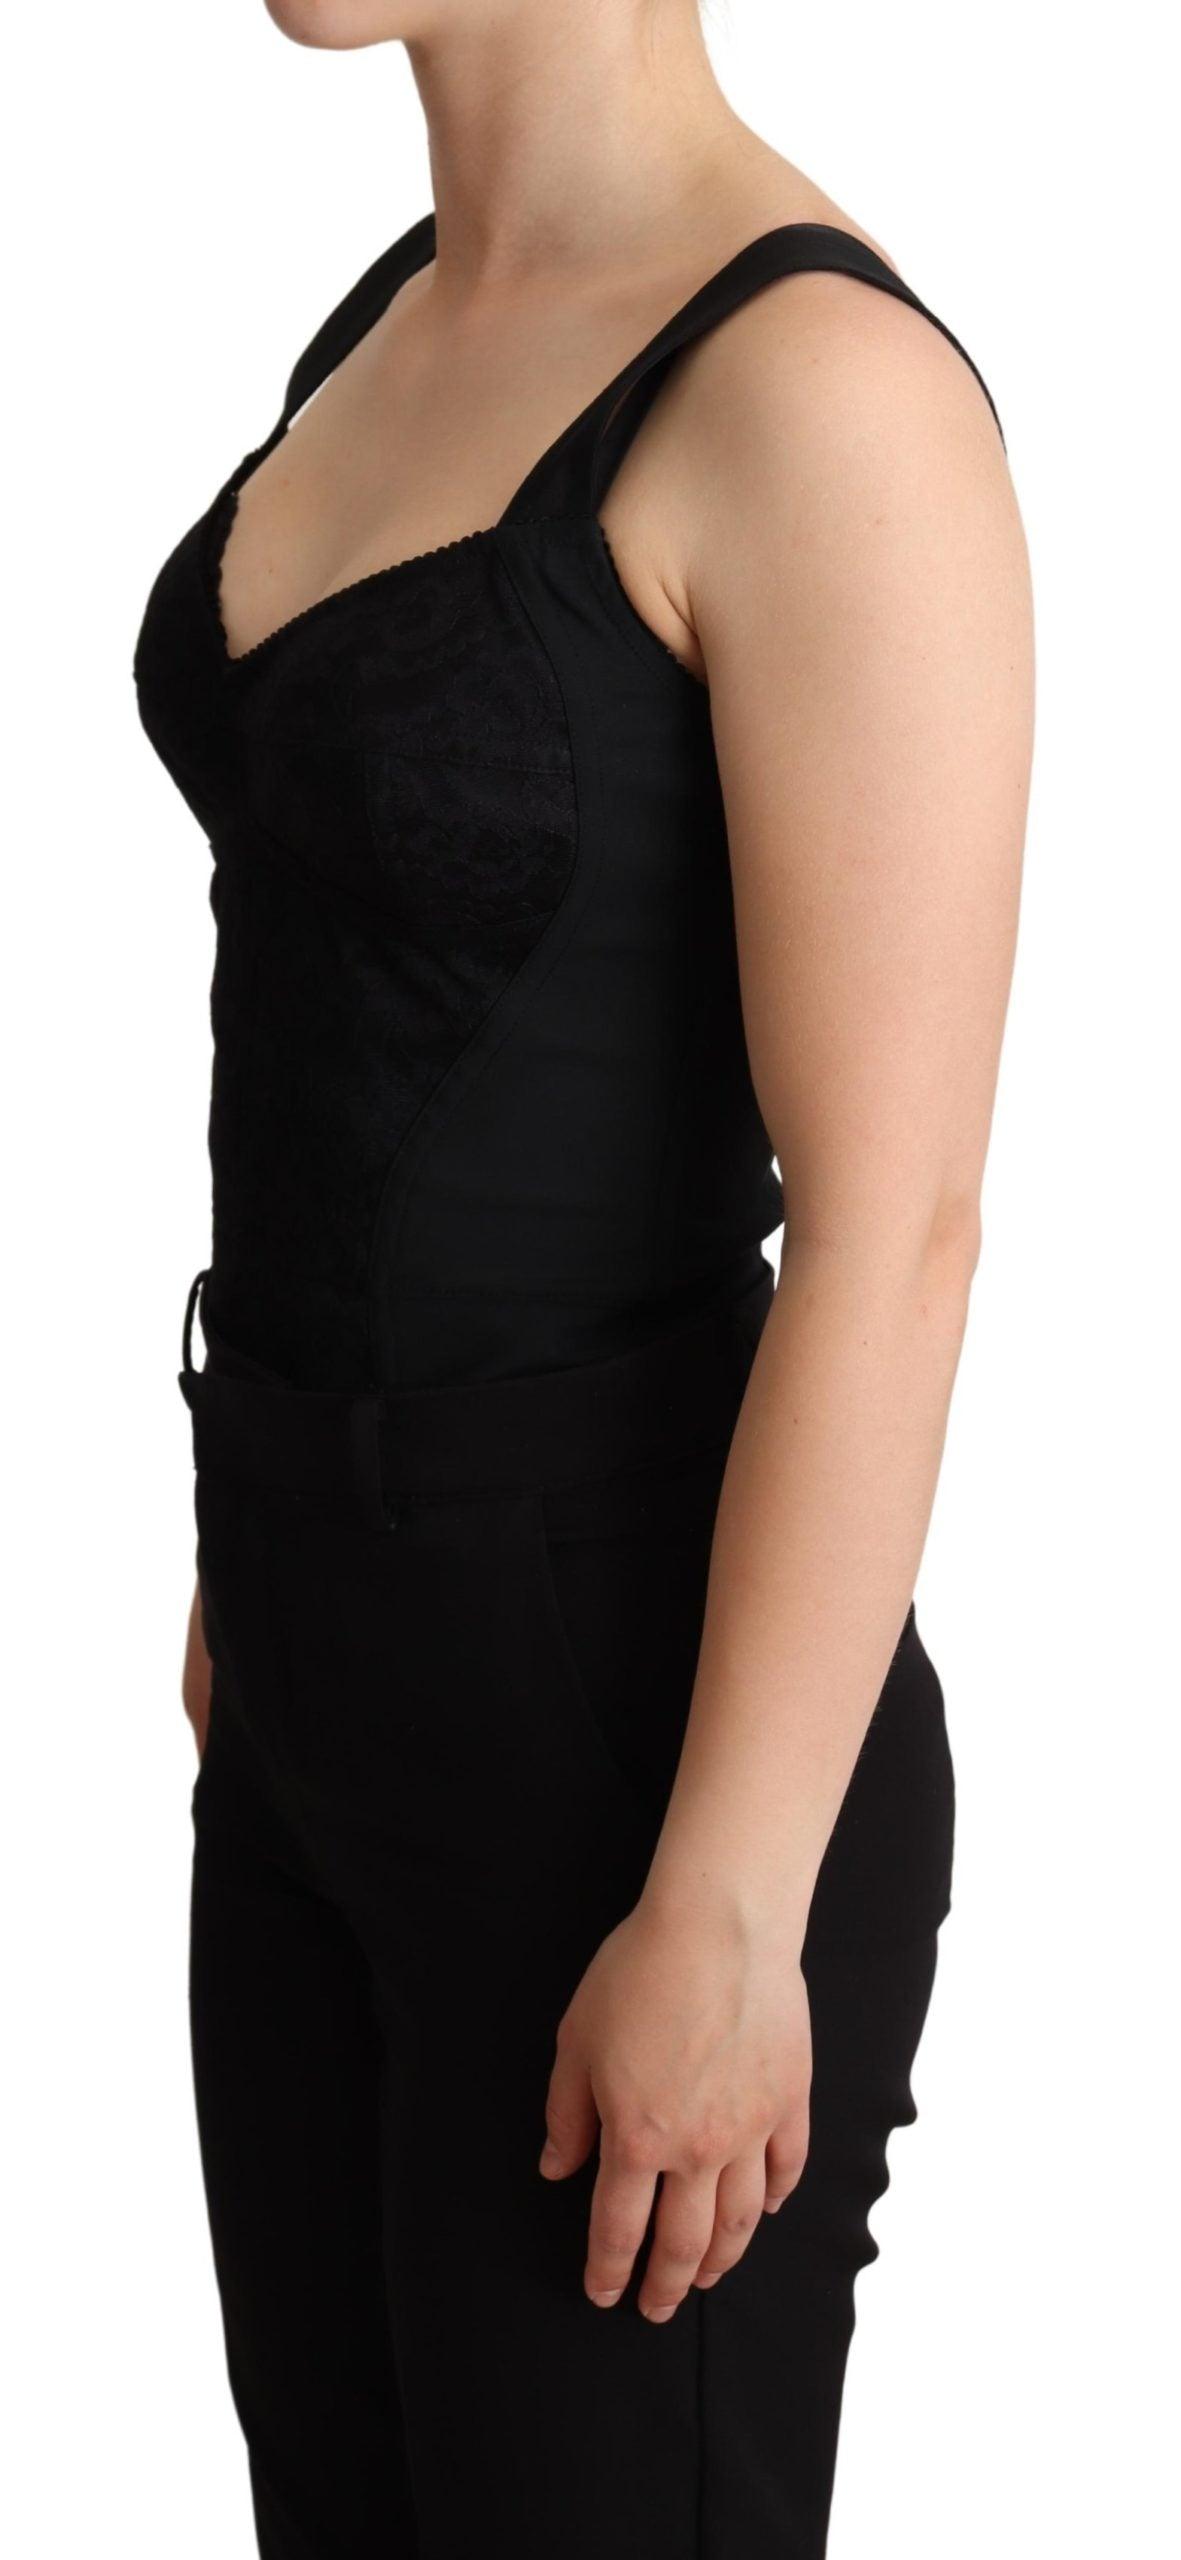 Dolce & Gabbana Black Floral Lace Bodysuit Hot Pants Dress Womens Clothing Lingerie Bodysuits Save 16% 